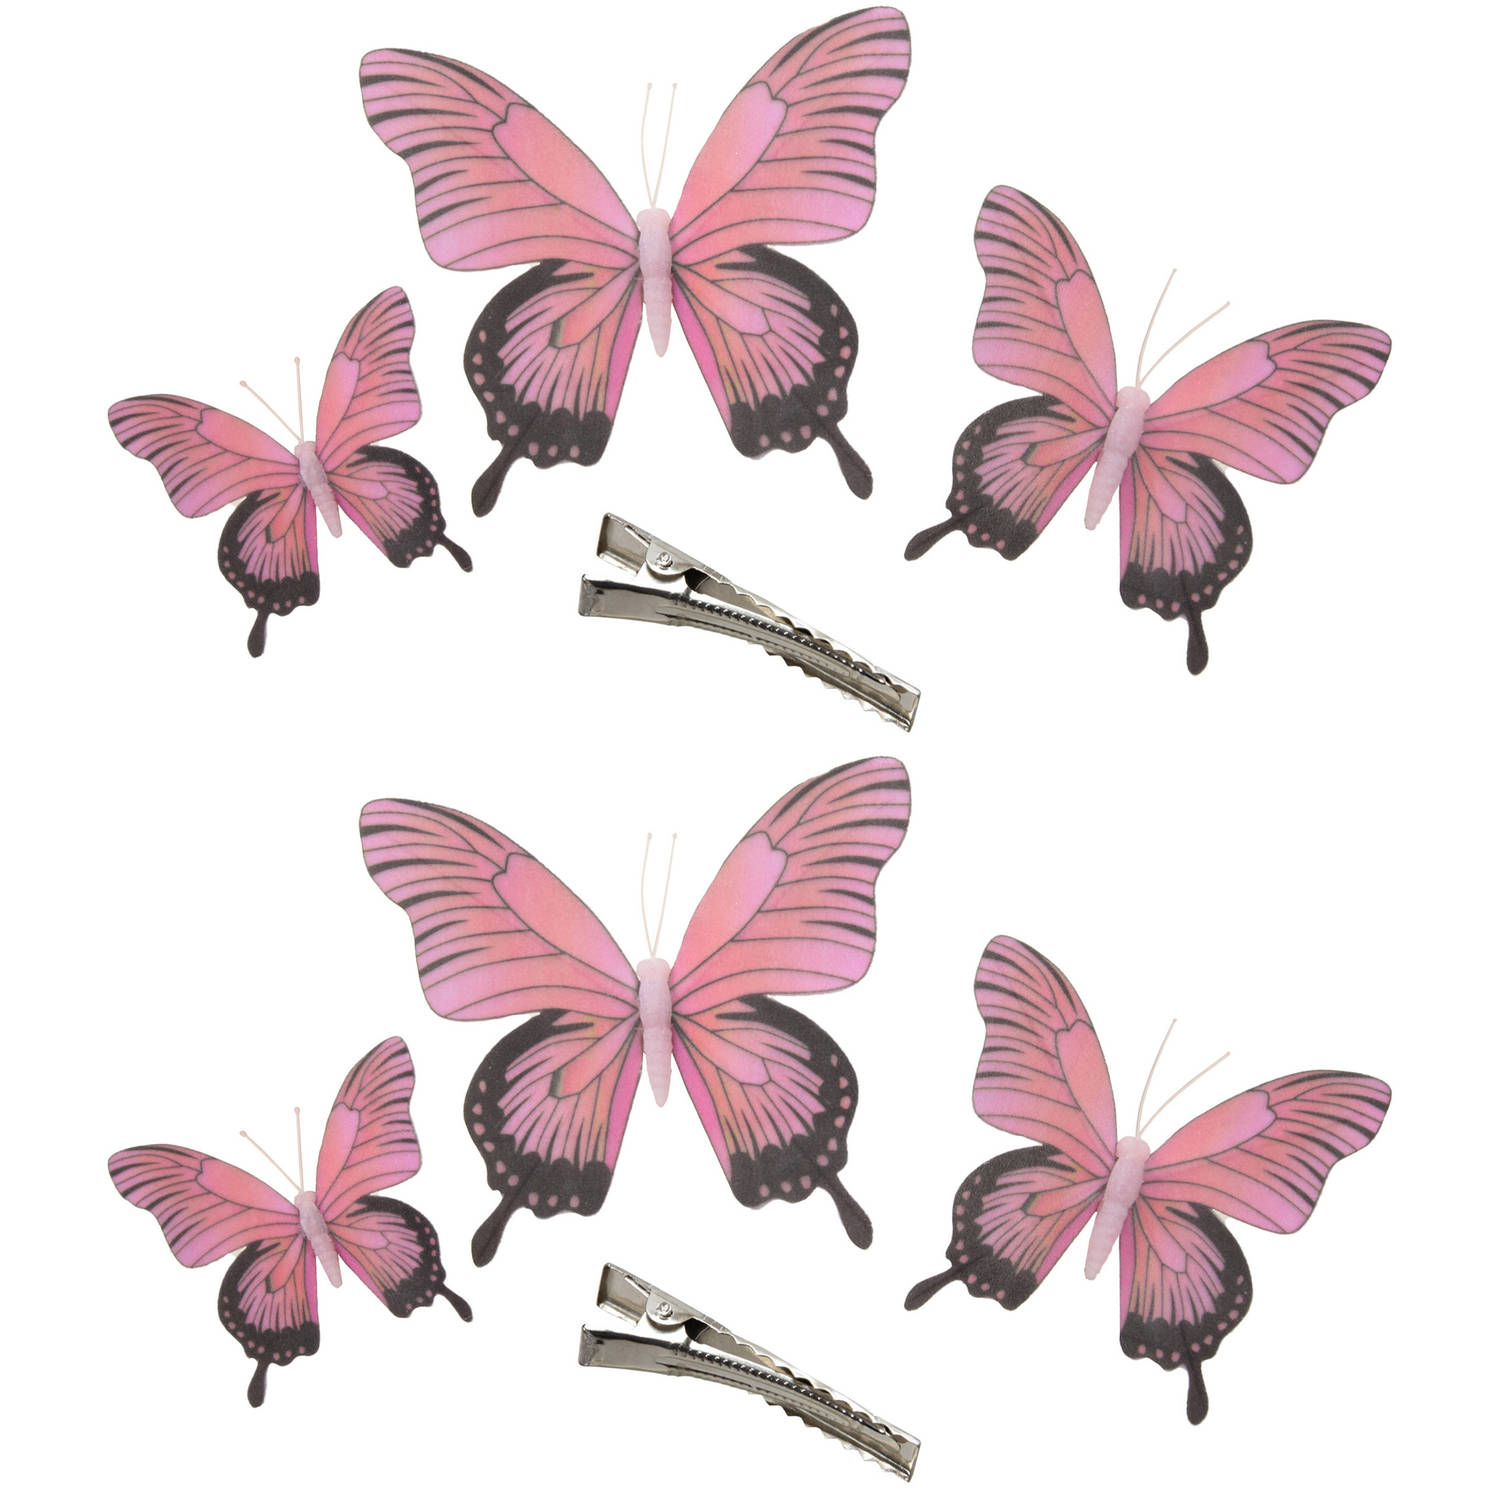 6x Stuks Decoratie Vlinders Op Clip Roze 3 Formaten 12-16-20 Cm Hobbydecoratieobject